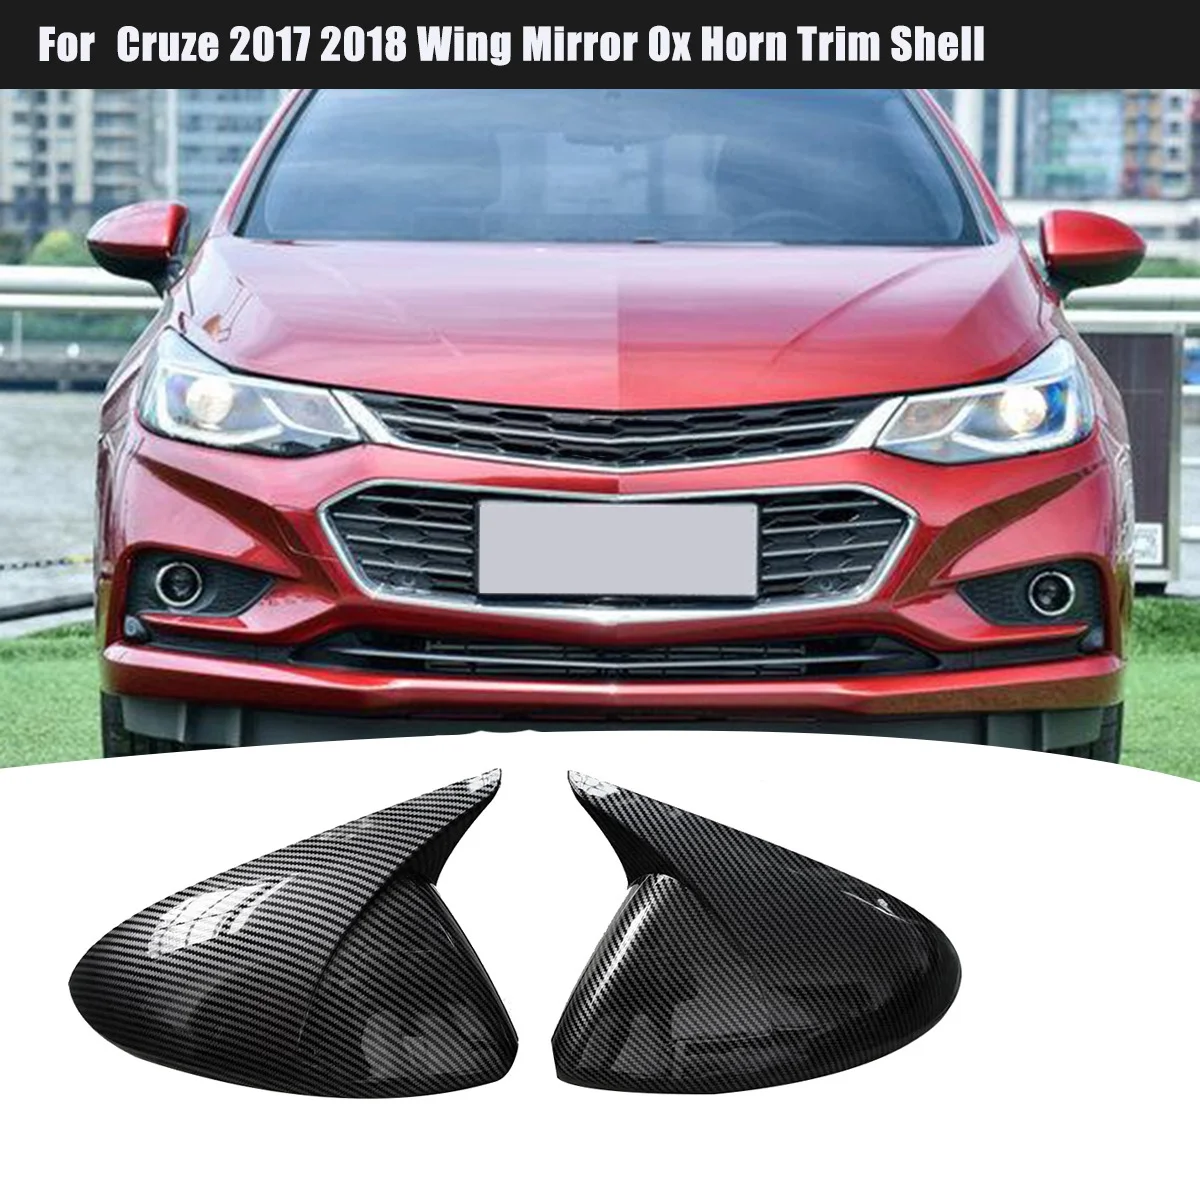 

Крышка для бокового зеркала заднего вида из углеродного волокна, Крышка корпуса для Chevrolet Cruze 2017 2018, крыло для зеркала Ox Horn, отделка корпуса